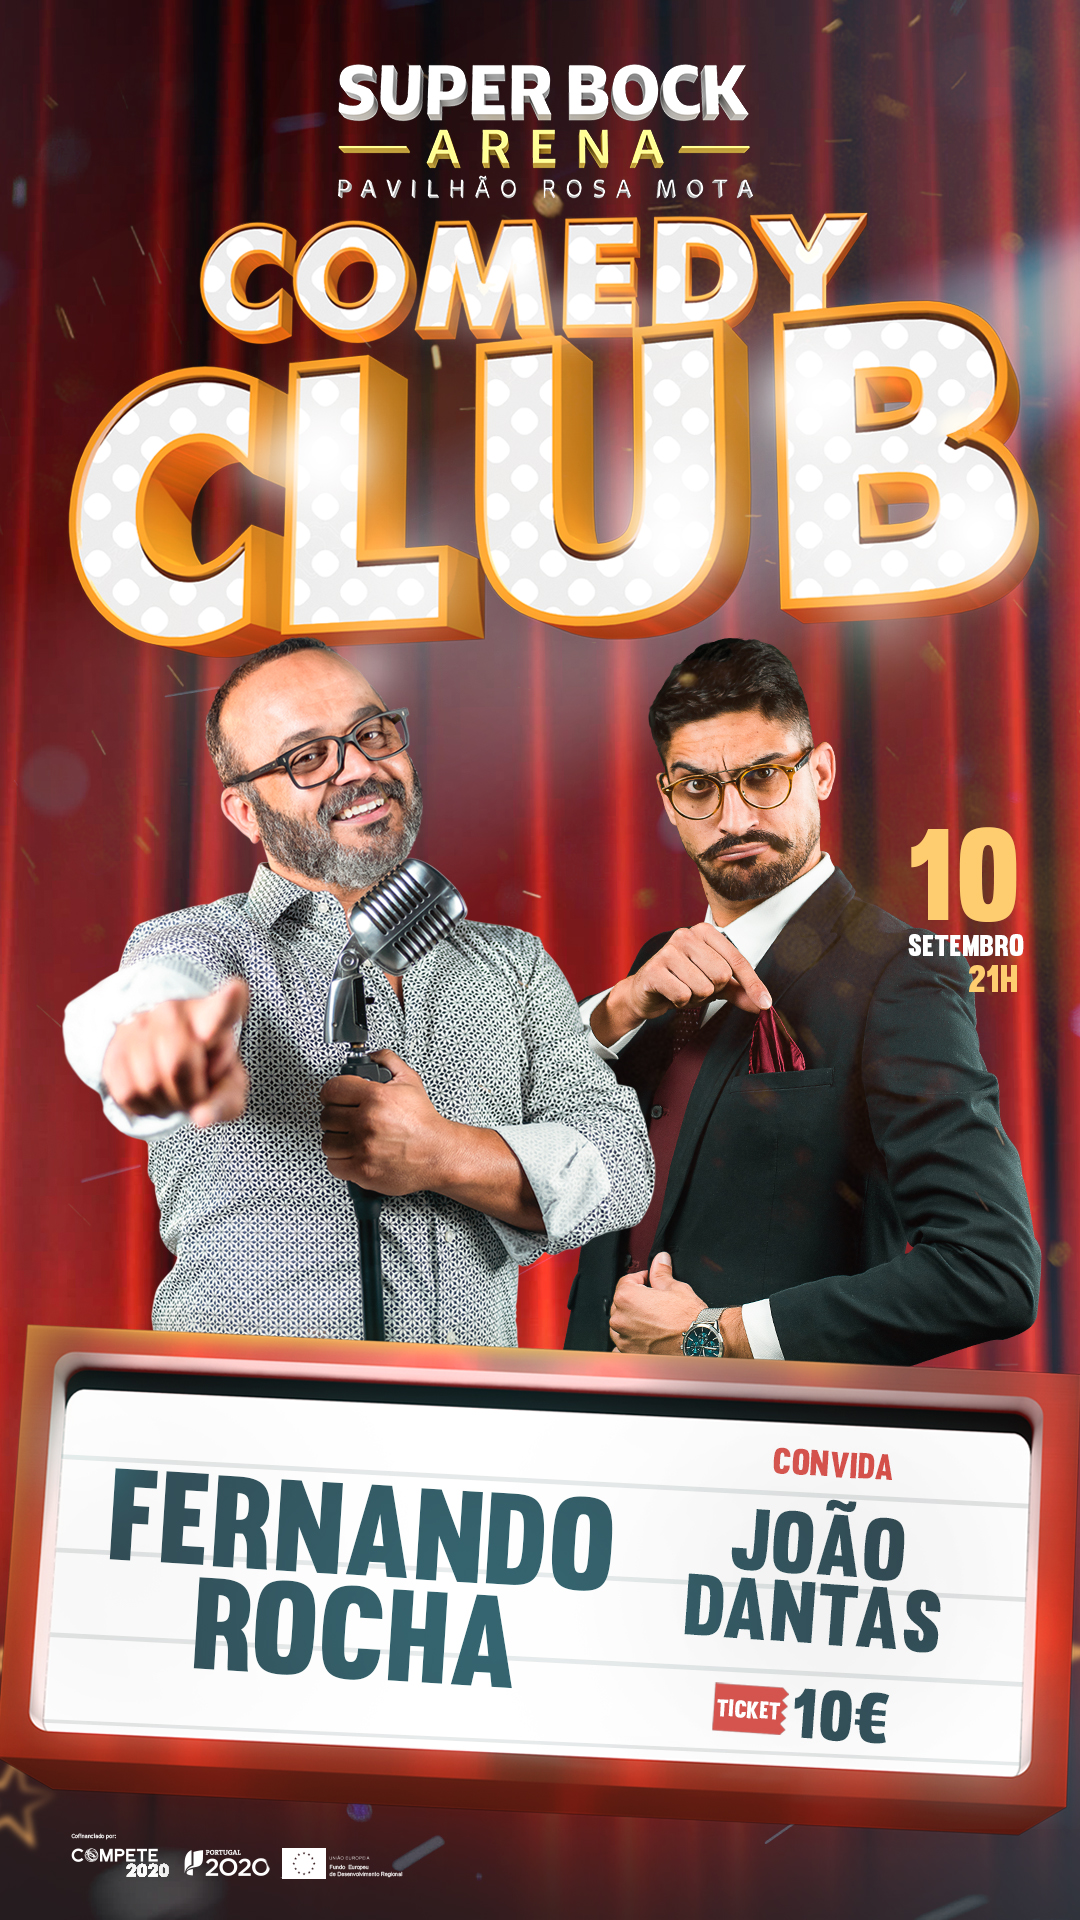 Comedy Club - Event